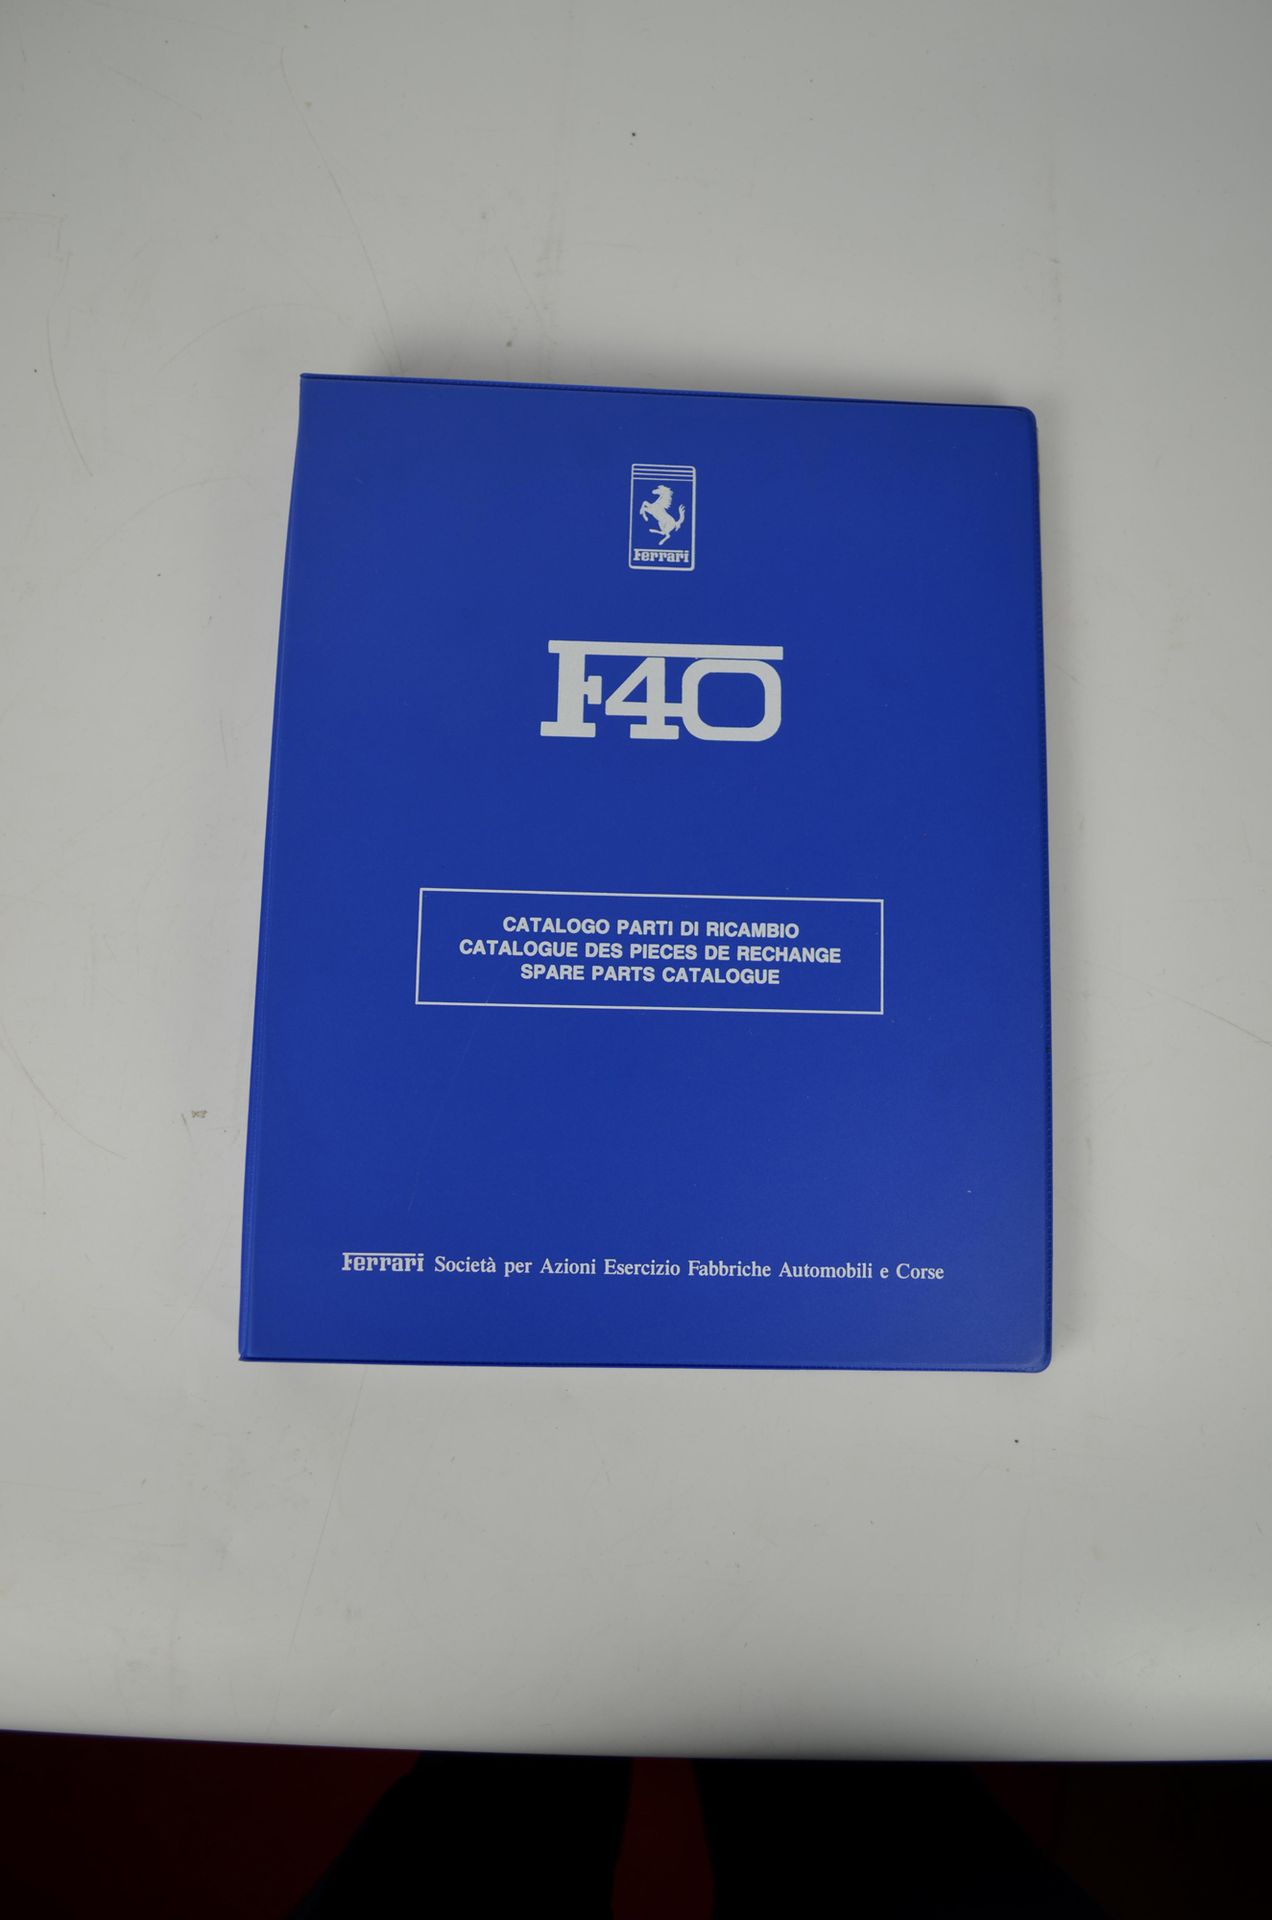 Catalogue de pièces de rechange F40 备件目录F40